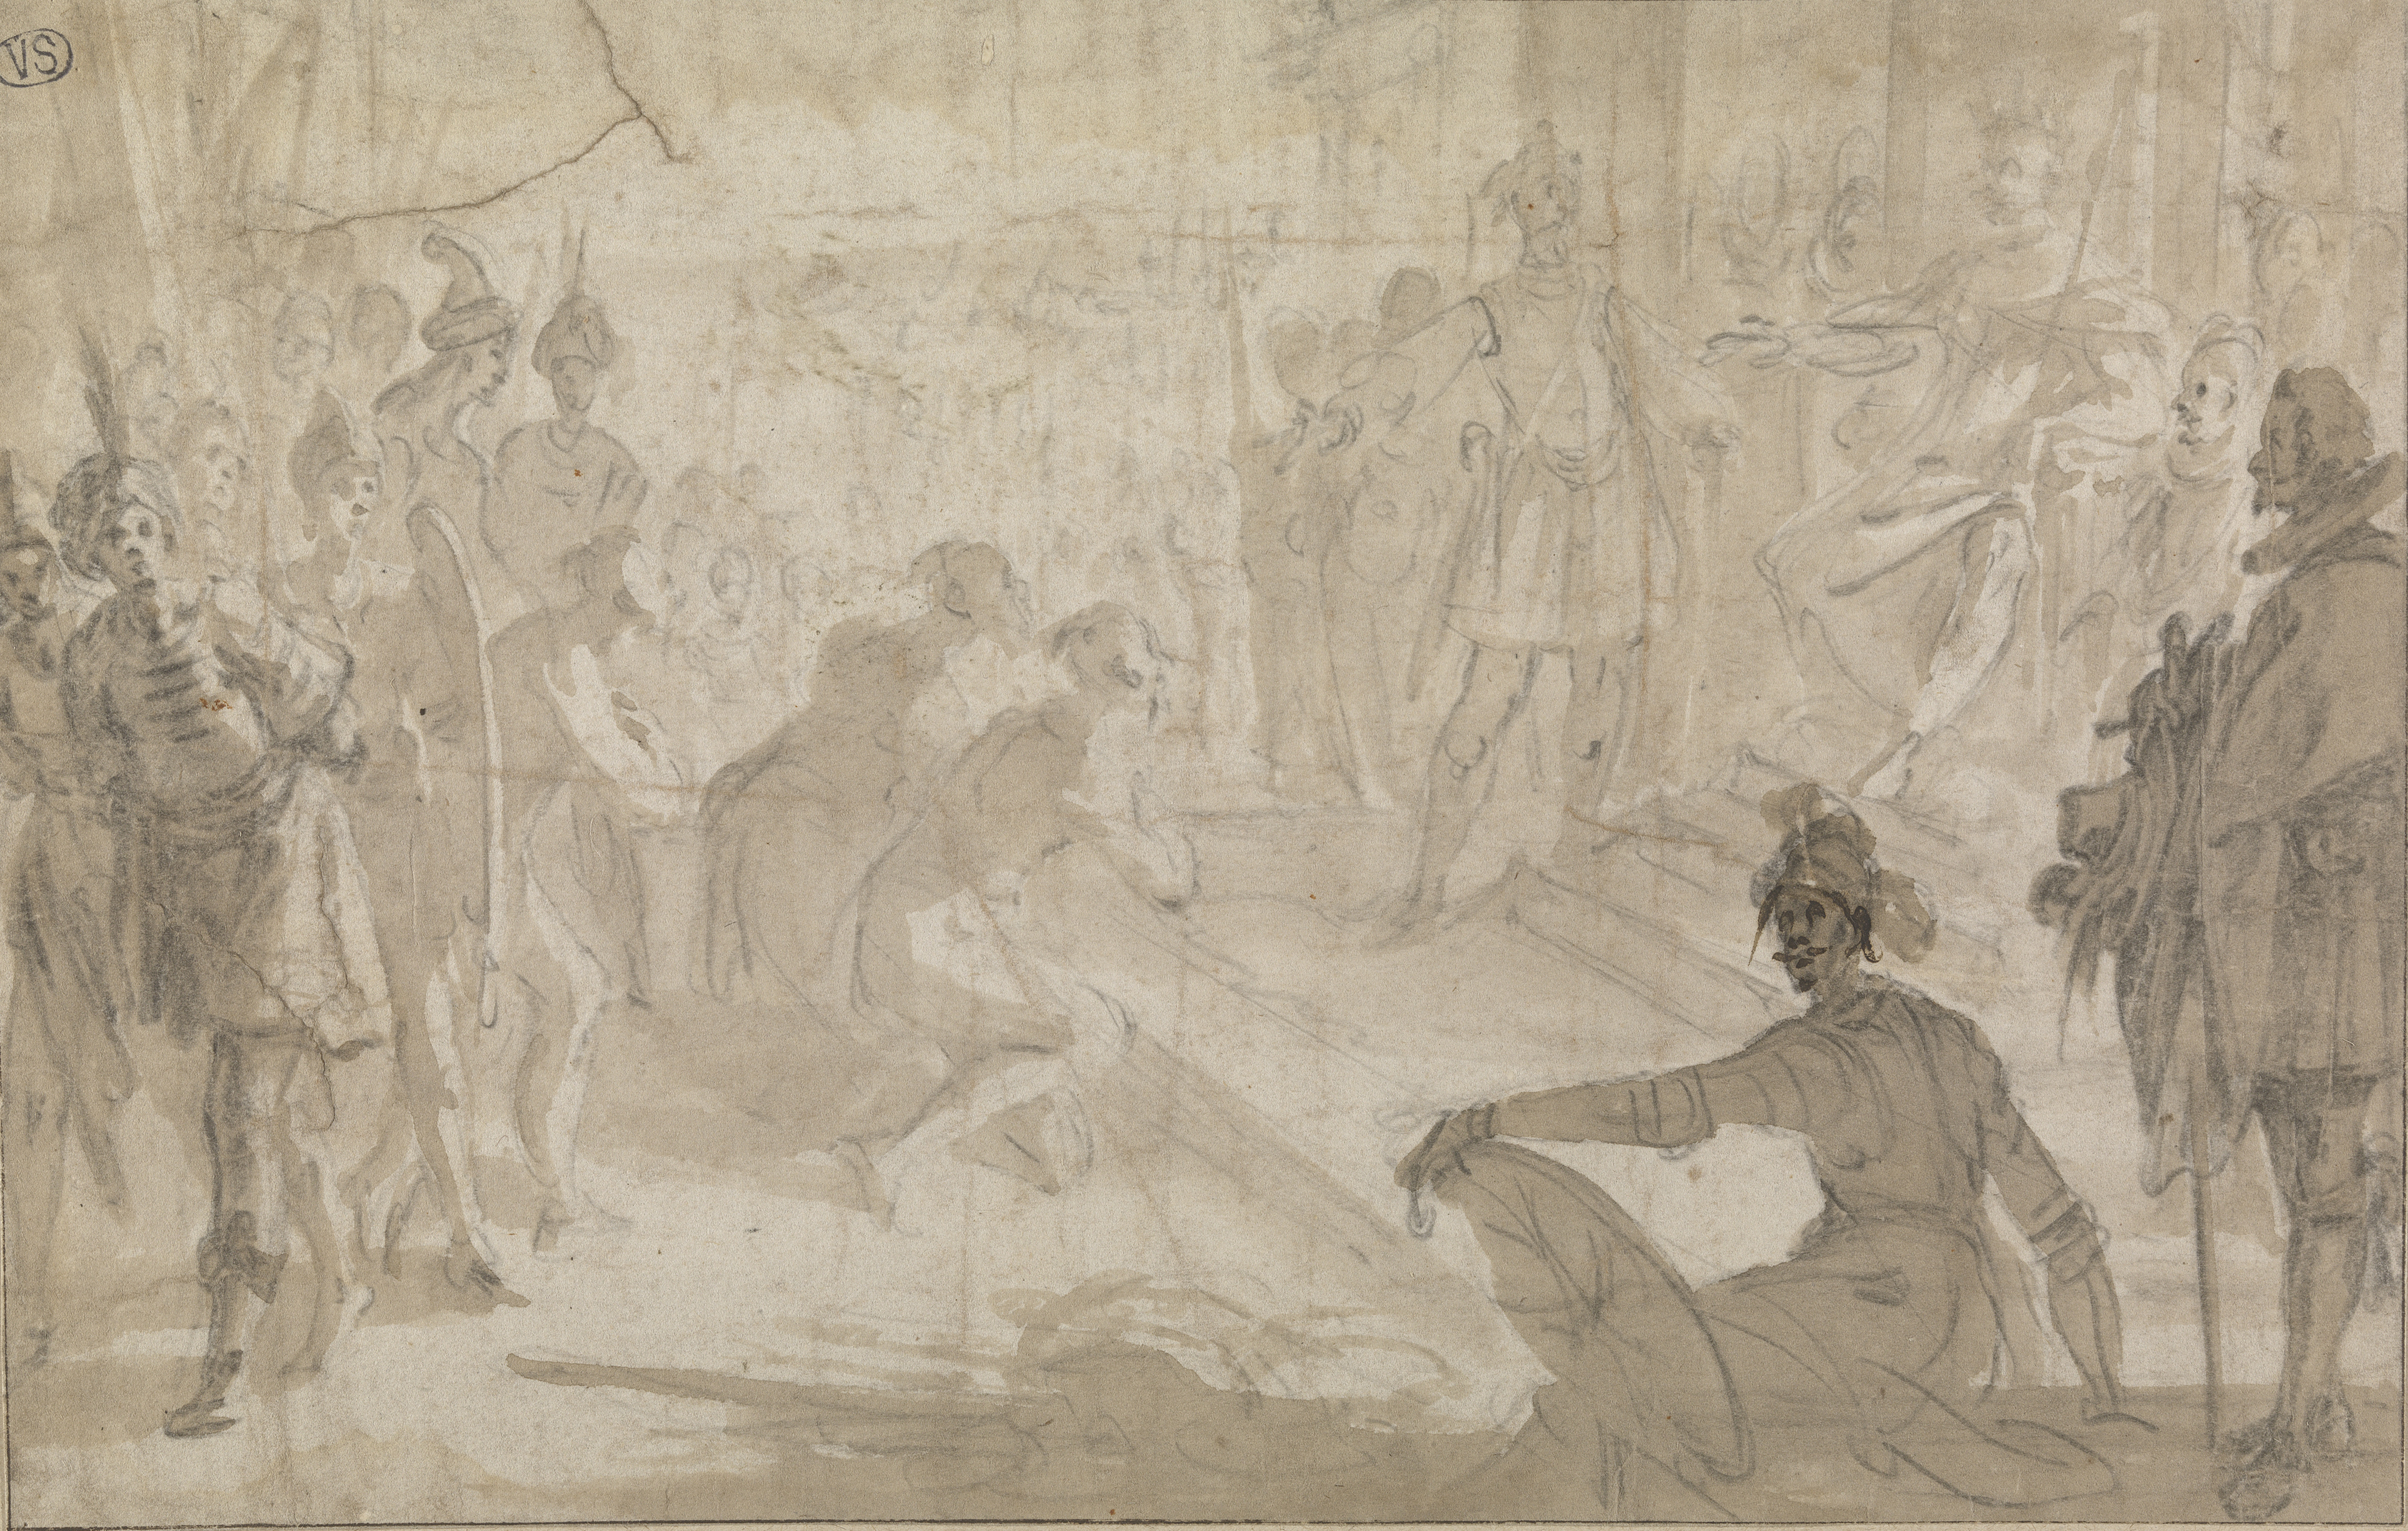 Jacques Callot, Admiraal Jacopo Inghirami toont Berberse gevangen aan Ferdinand I de Medici, 1618-1620, Musea Brugge, 190 mm x 298 mm, inv. 0000.GRO1772.II, CC0, beeld artinflanders.be